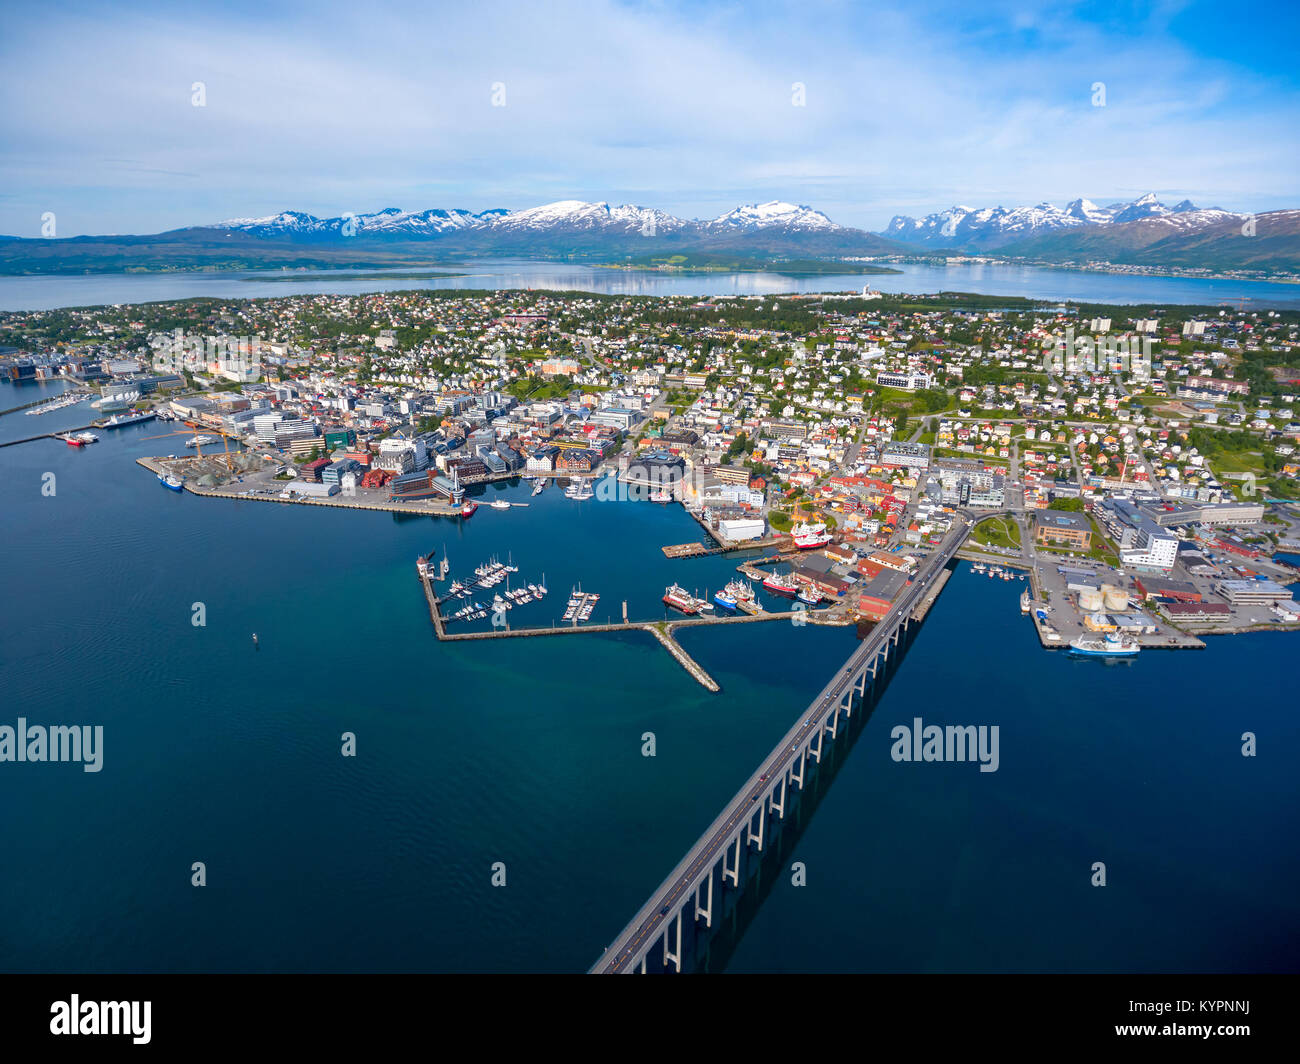 Ponte della città Tromso, Norvegia la fotografia aerea. Tromso è considerata la città più settentrionale del mondo con una popolazione al di sopra di 50.000. Foto Stock